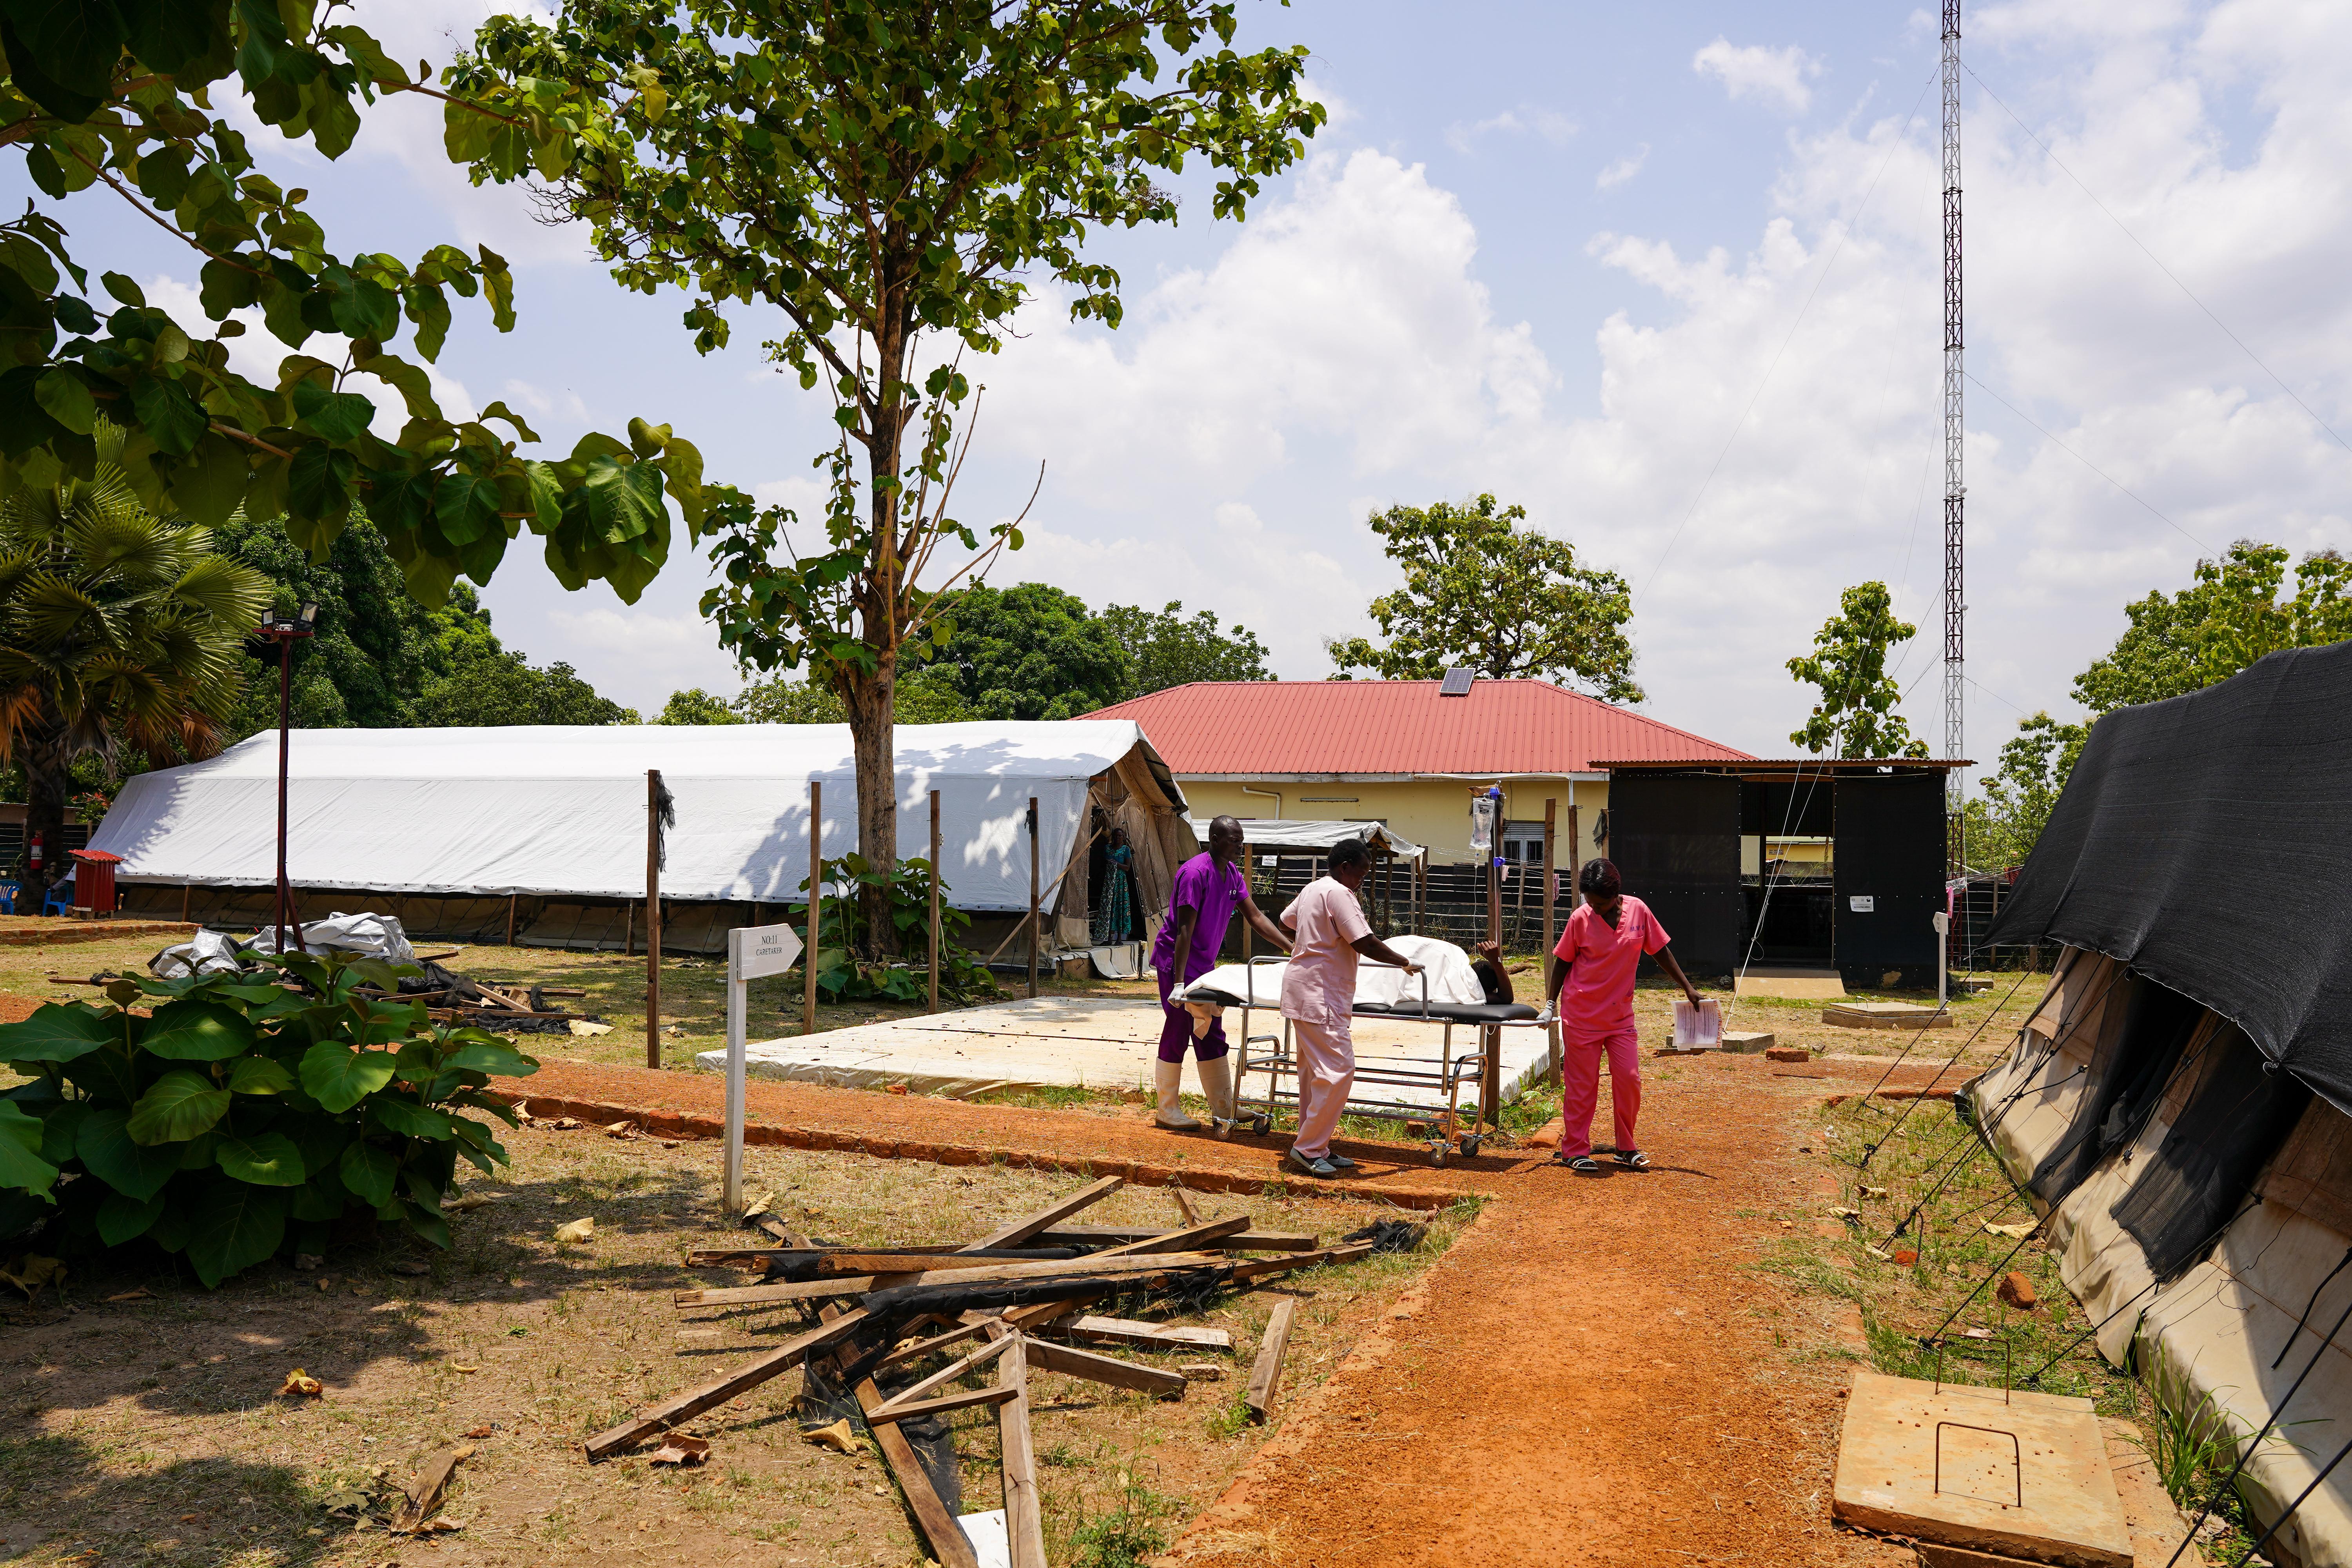 Providing healthcare in post-conflict context in Kajo Keji, South Sudan